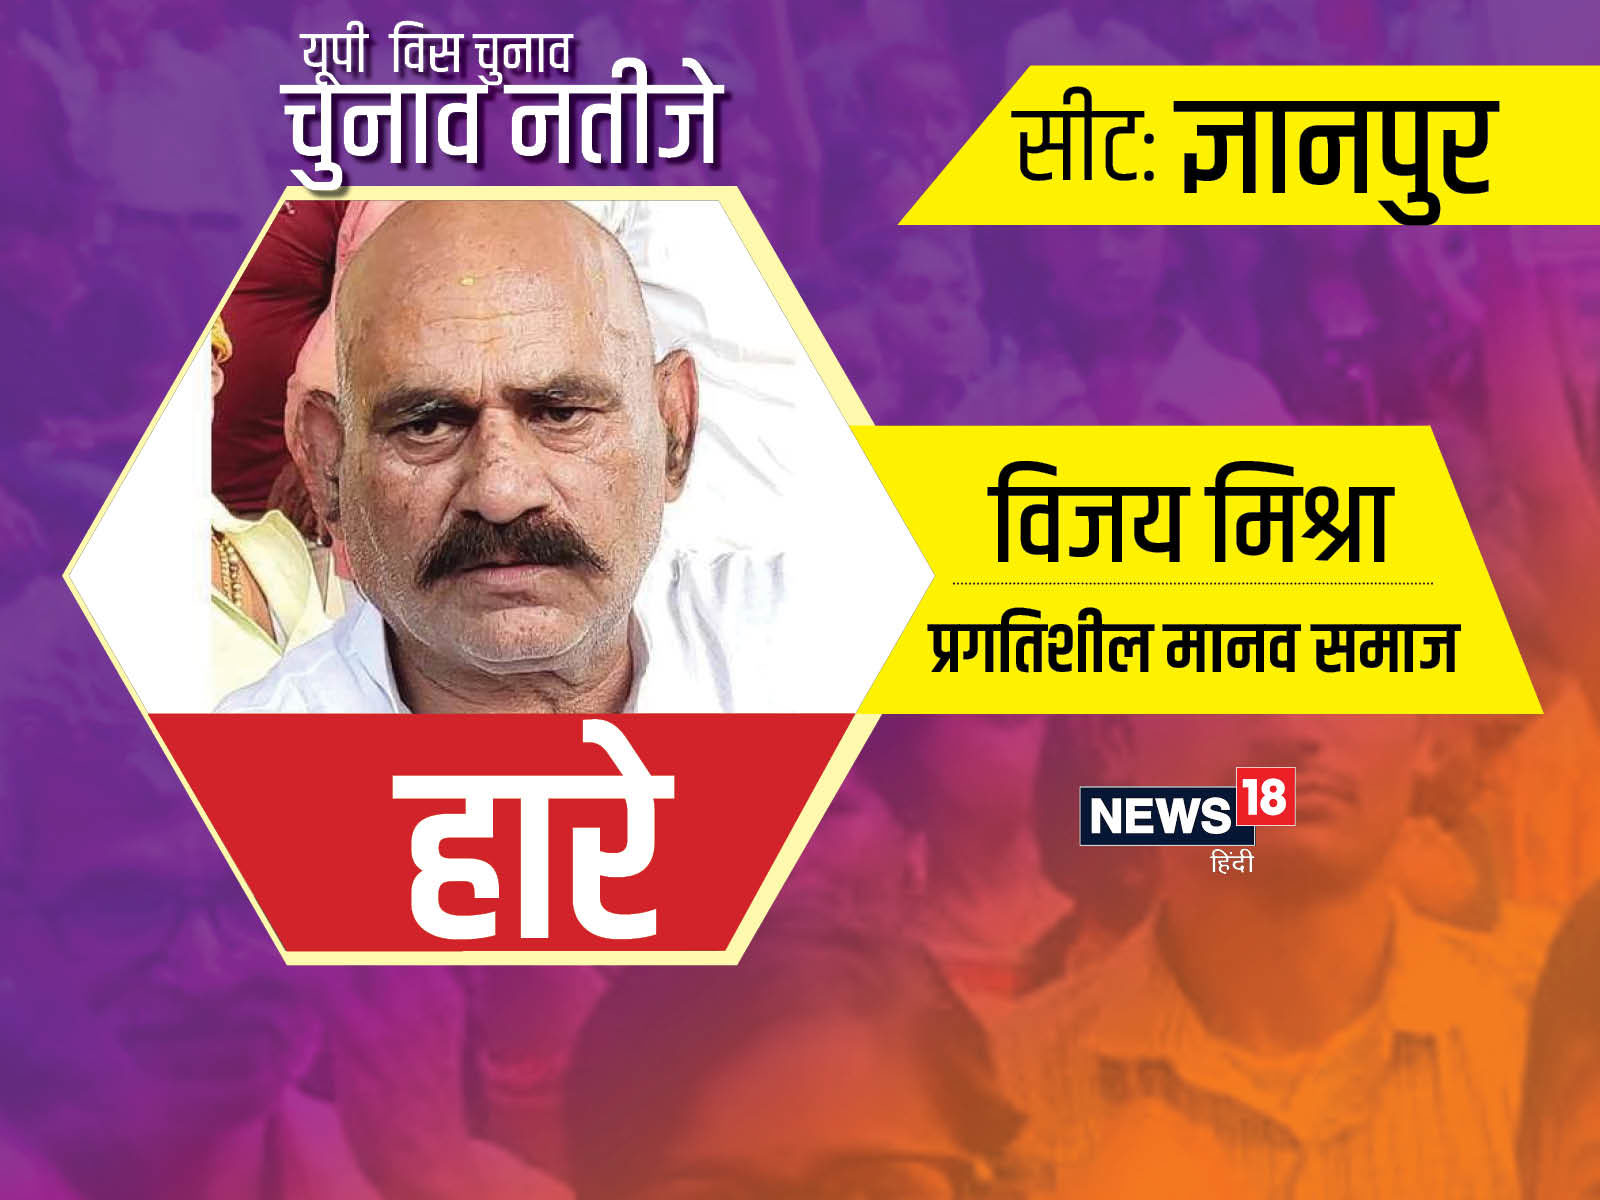 ज्ञानपुर विधानसभा सीट पर बाहुबली विधायक विजय मिश्रा चुनाव हार गए हैं, उन्होंने जेल से ही ताल ठोकी थी.